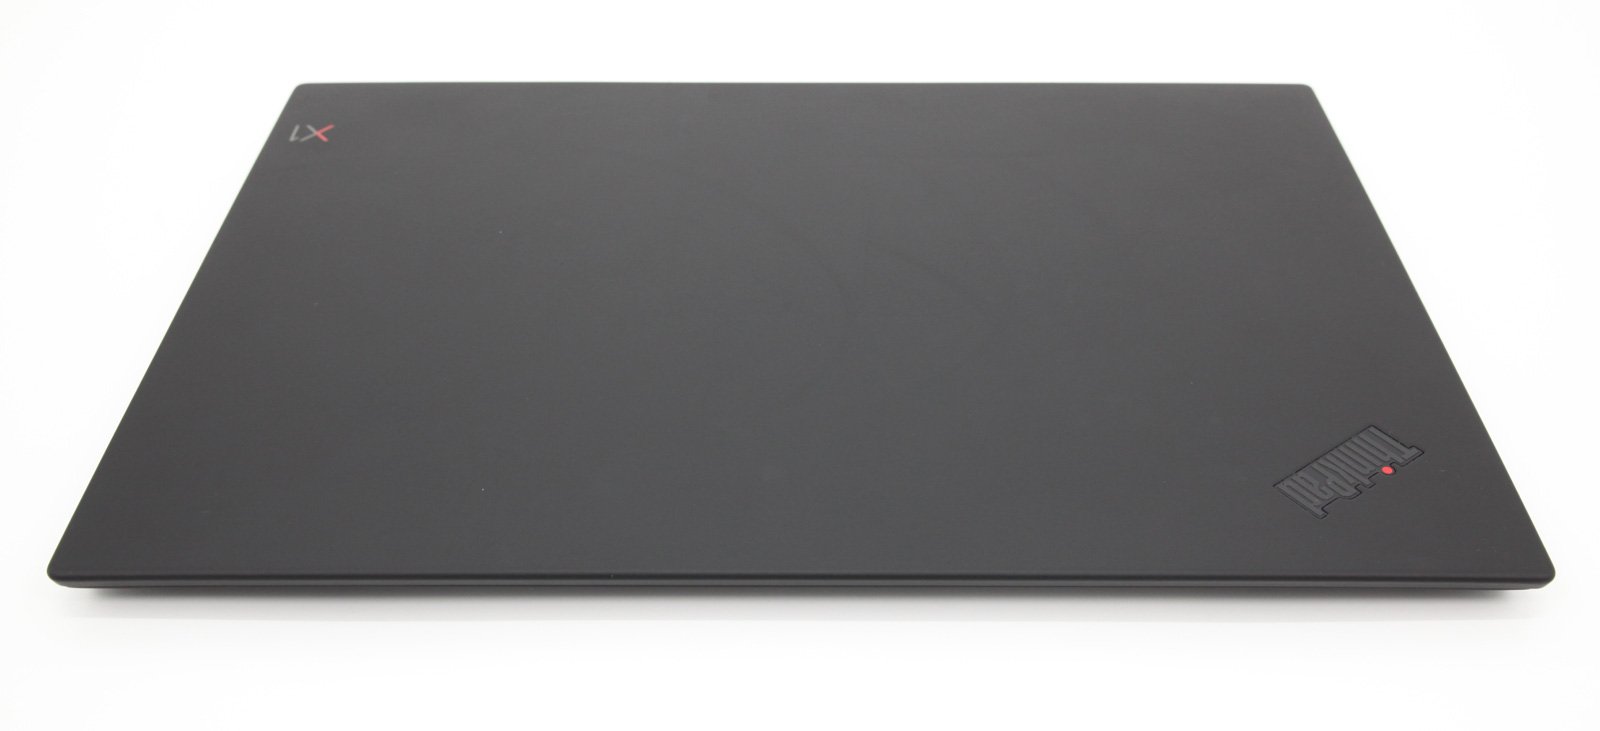 Lenovo Thinkpad X1 Carbon 6th Gen: i5 8th Gen, 256GB SSD, 8GB RAM, Warranty - CruiseTech